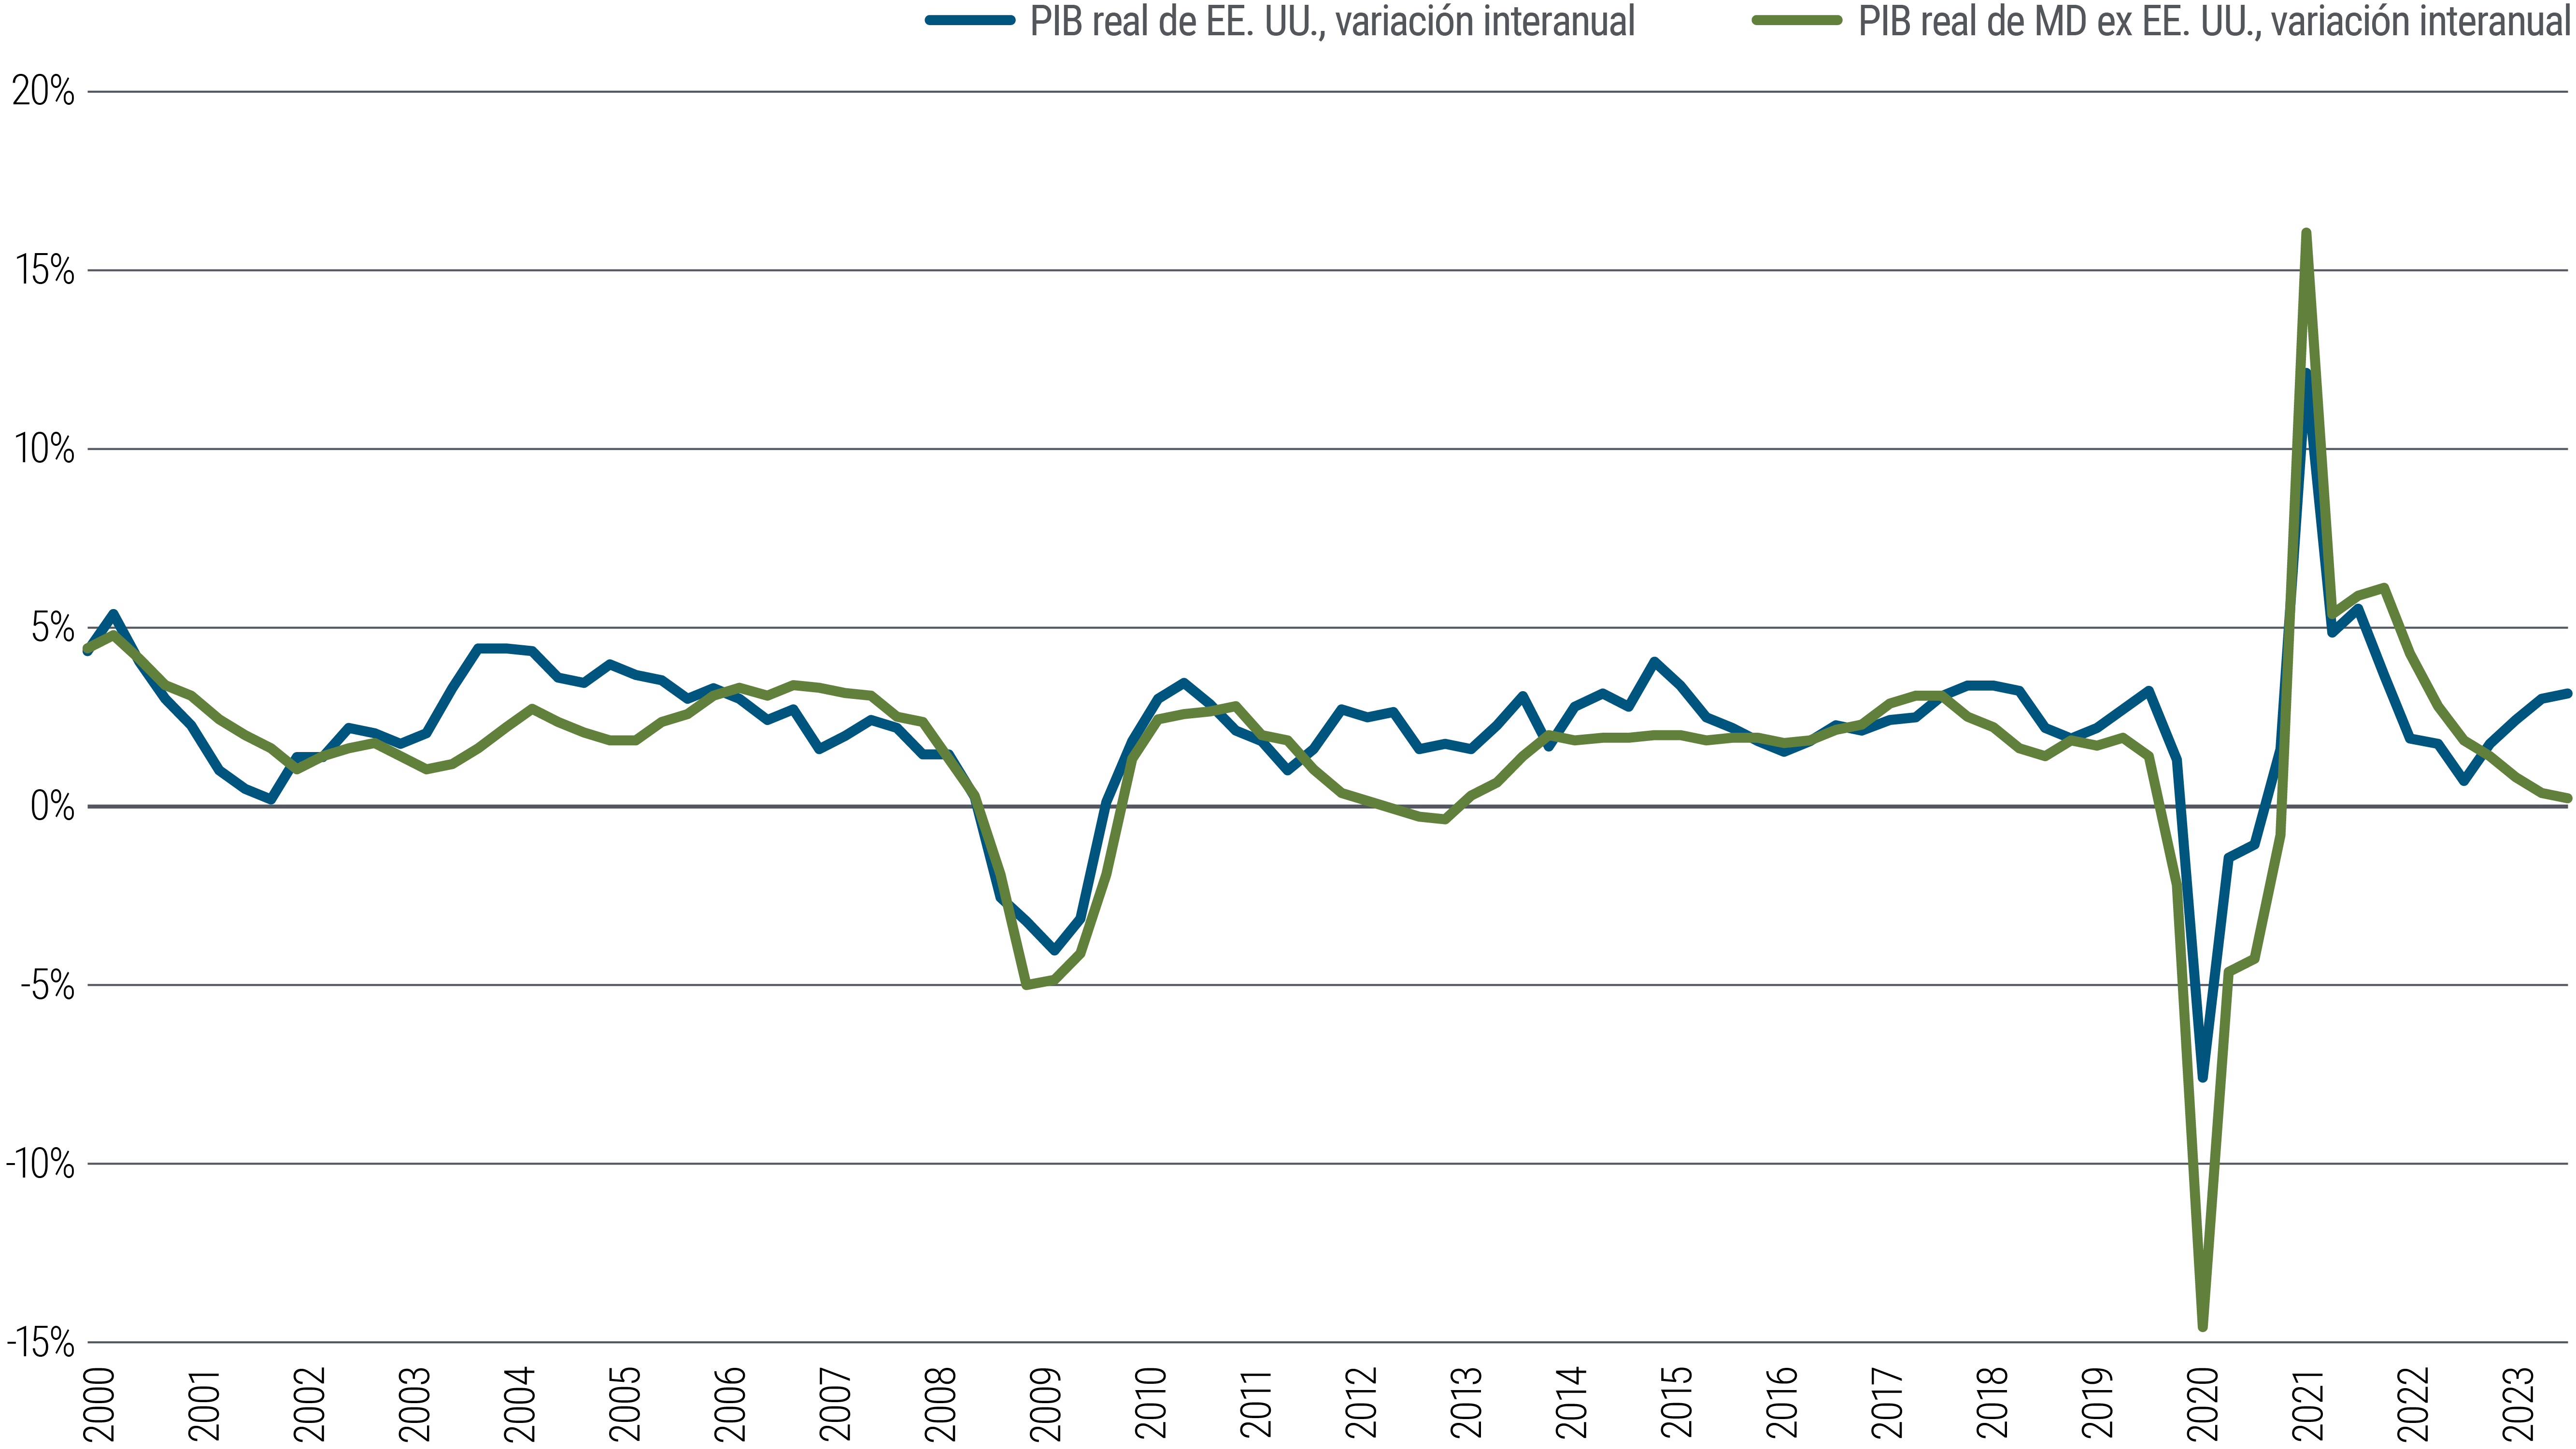 El gráfico 1 es un gráfico de líneas que, basándose en el PIB, compara el comportamiento económico a largo plazo de EE. UU. con el de otros mercados desarrollados (eurozona, Reino Unido, Australia y Canadá) hasta principios de 2024. A largo plazo, las economías tienden a moverse en paralelo, pero muestran divergencias desde aproximadamente 2021, ya que el PIB estadounidense ha rebotado hasta cerca del 3%, mientras que, en otros mercados desarrollados, el crecimiento del PIB ha caído prácticamente al 0%. 